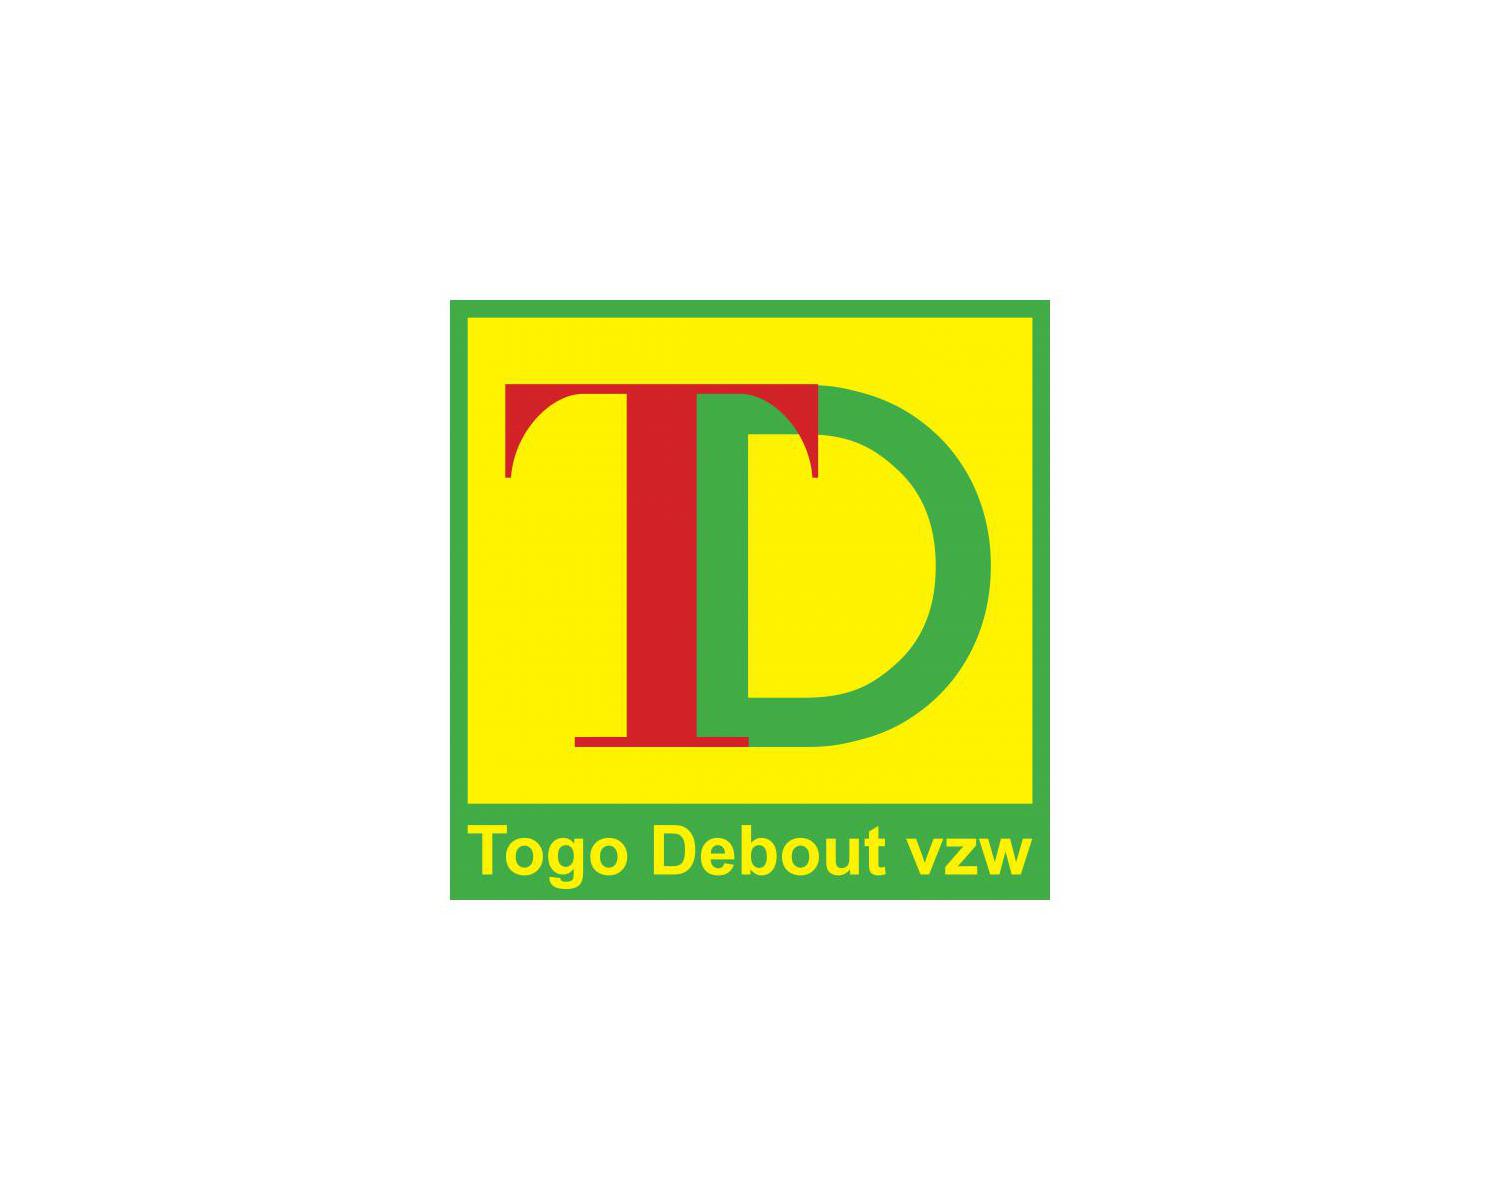 Togo Debout